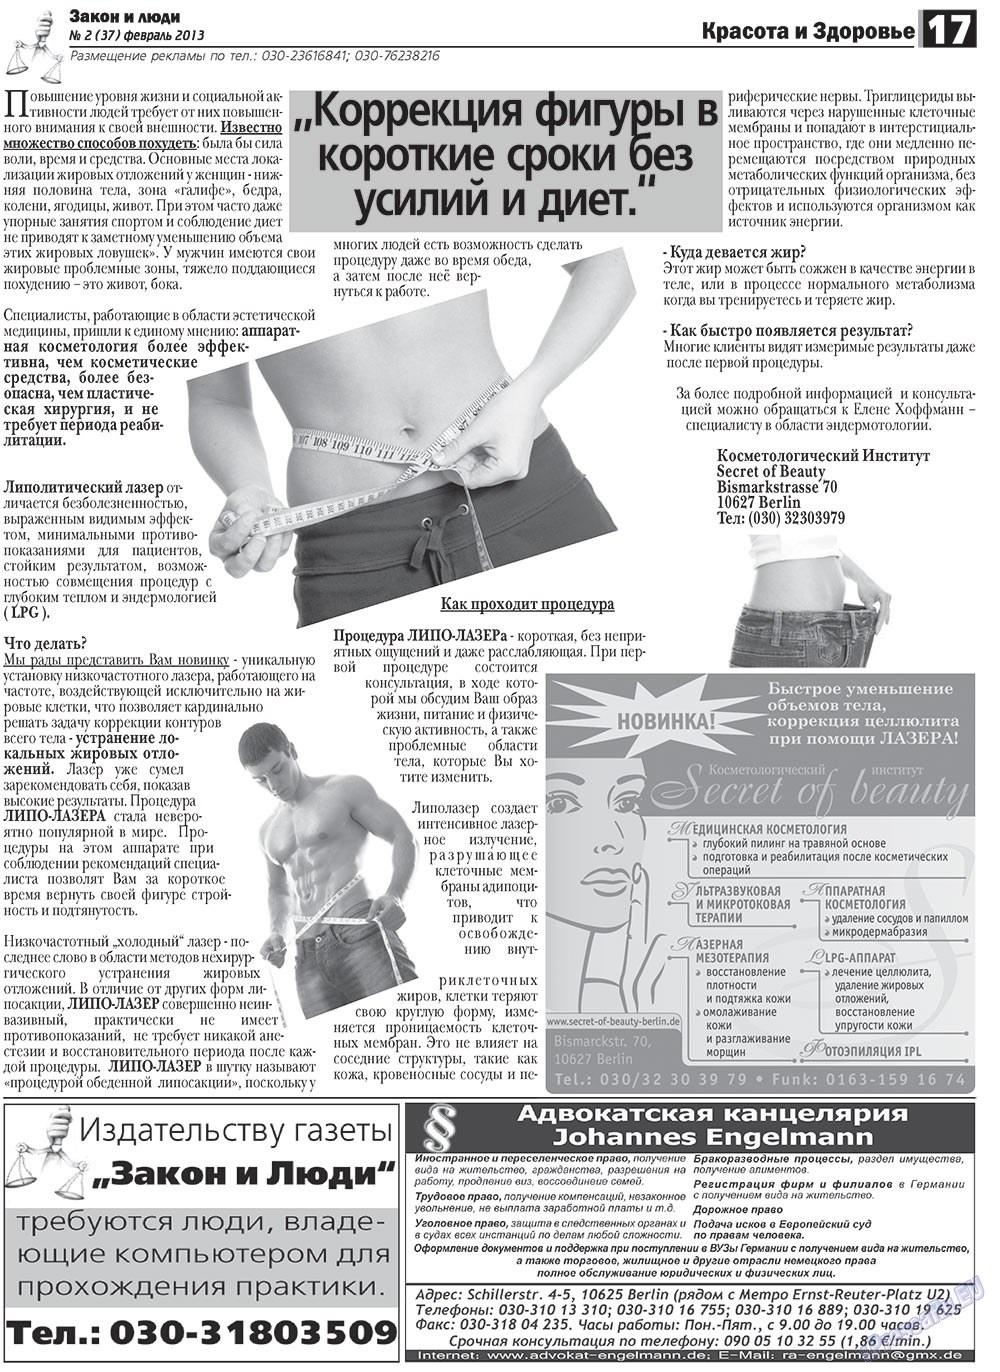 Закон и люди, газета. 2013 №2 стр.17